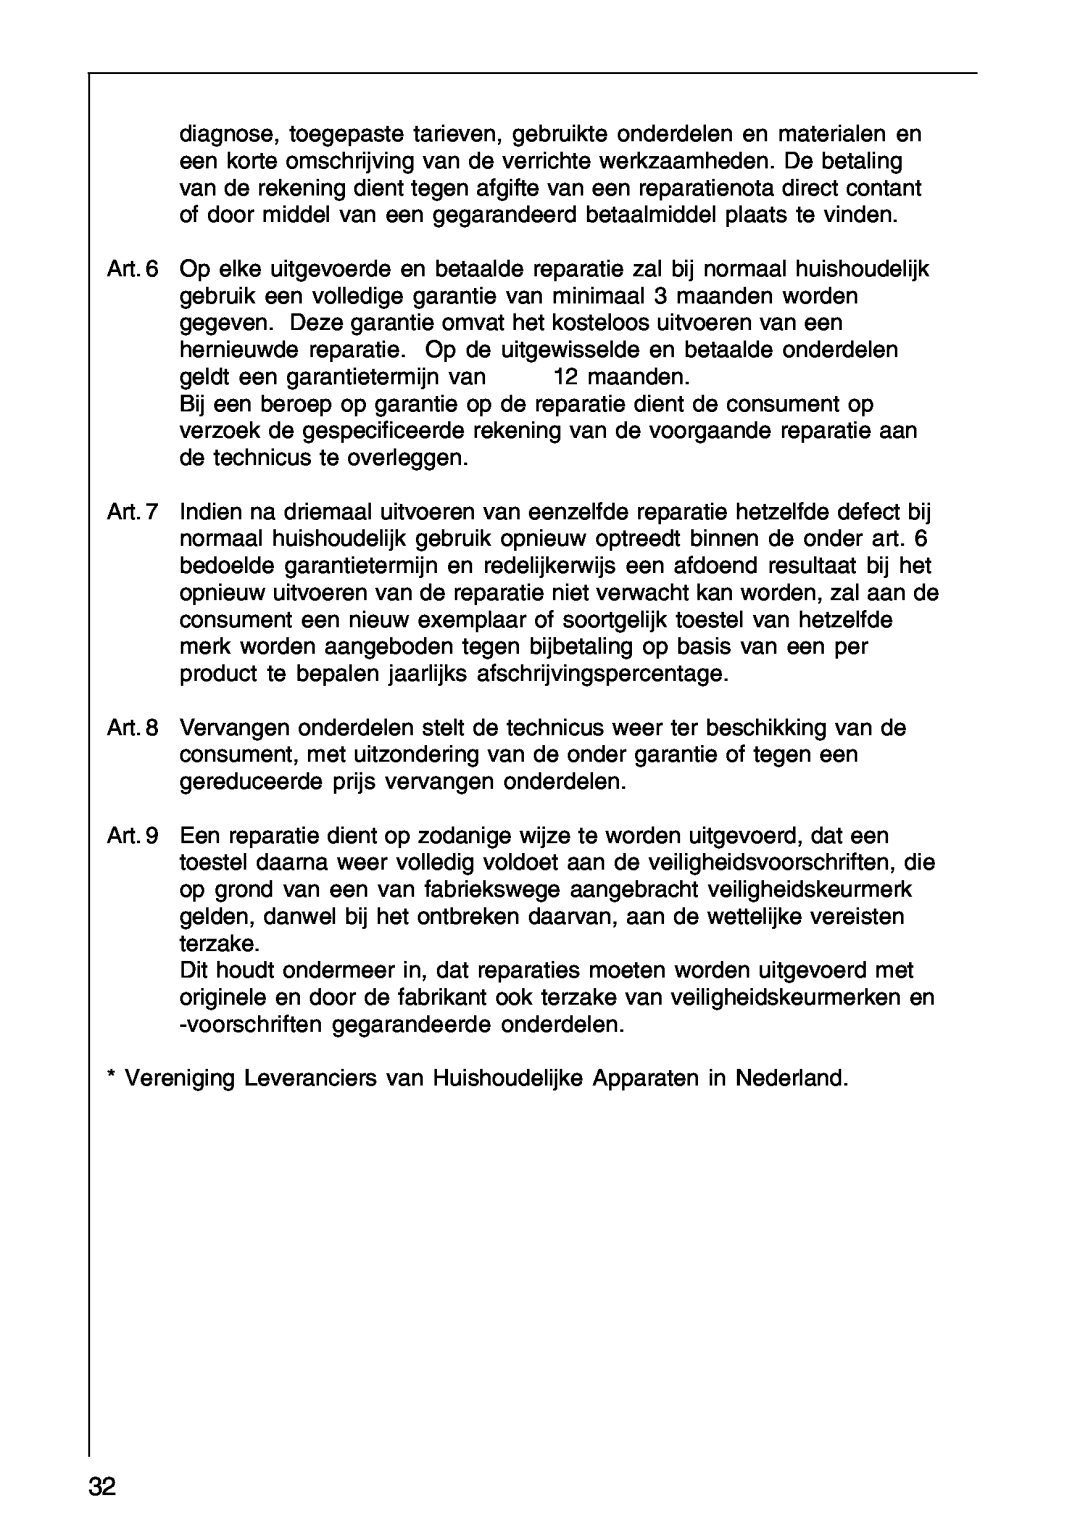 AEG DF 6160 geldt een garantietermijn van 12 maanden, Vereniging Leveranciers van Huishoudelijke Apparaten in Nederland 